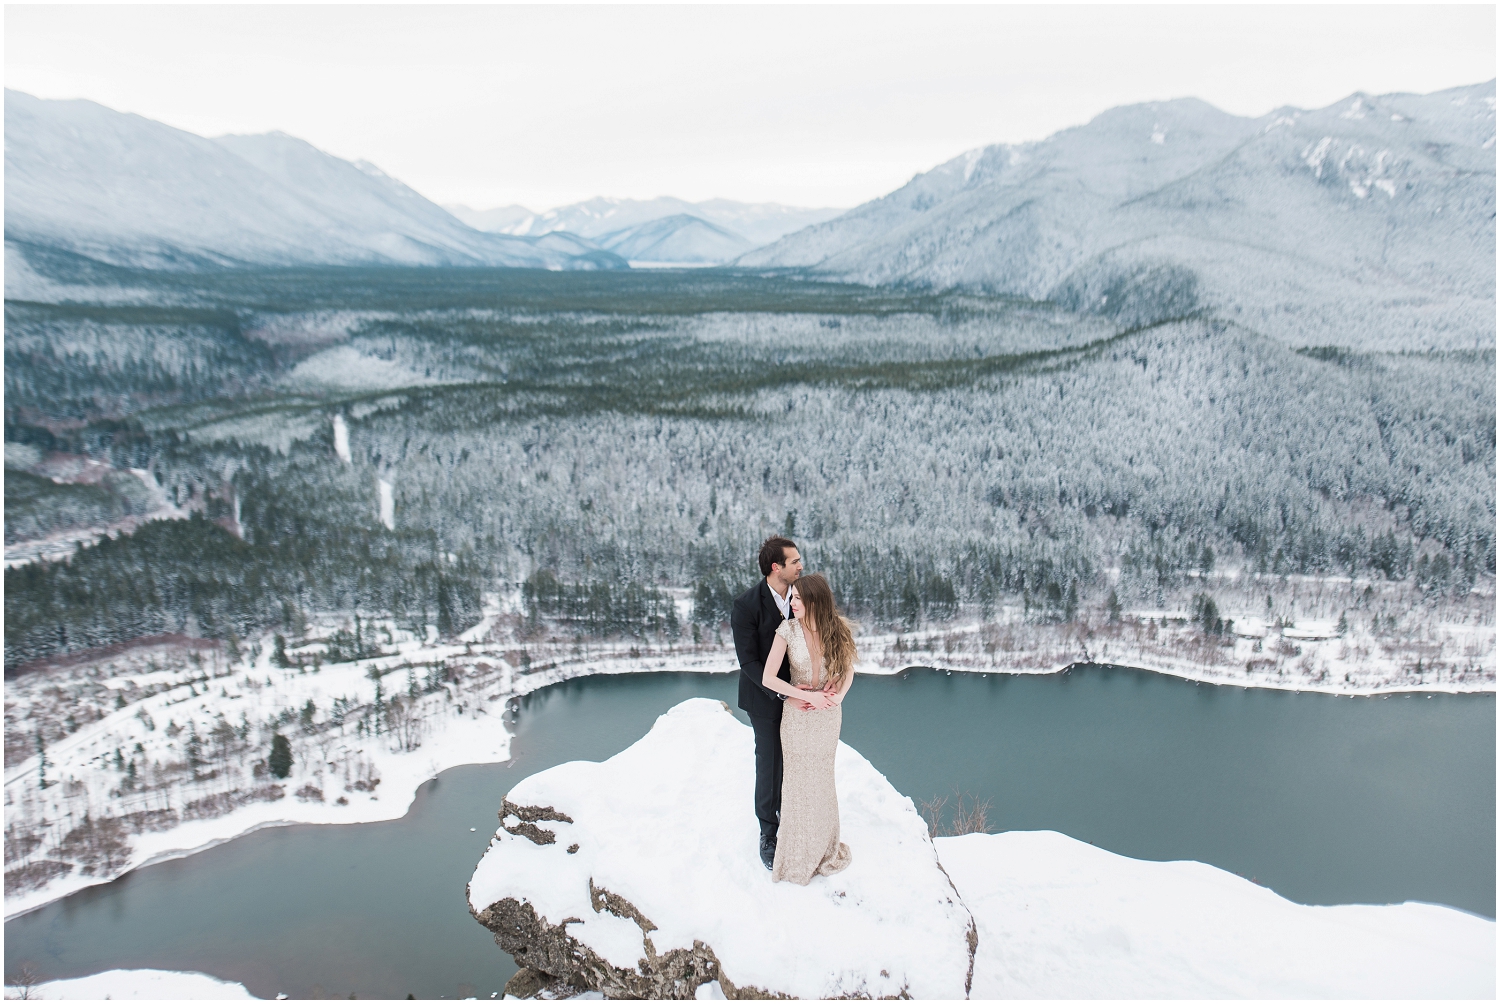 Rattlesnake Mountain adventure hiking engagement photos. Seattle Wedding Photography, Snohomish Wedding Photography